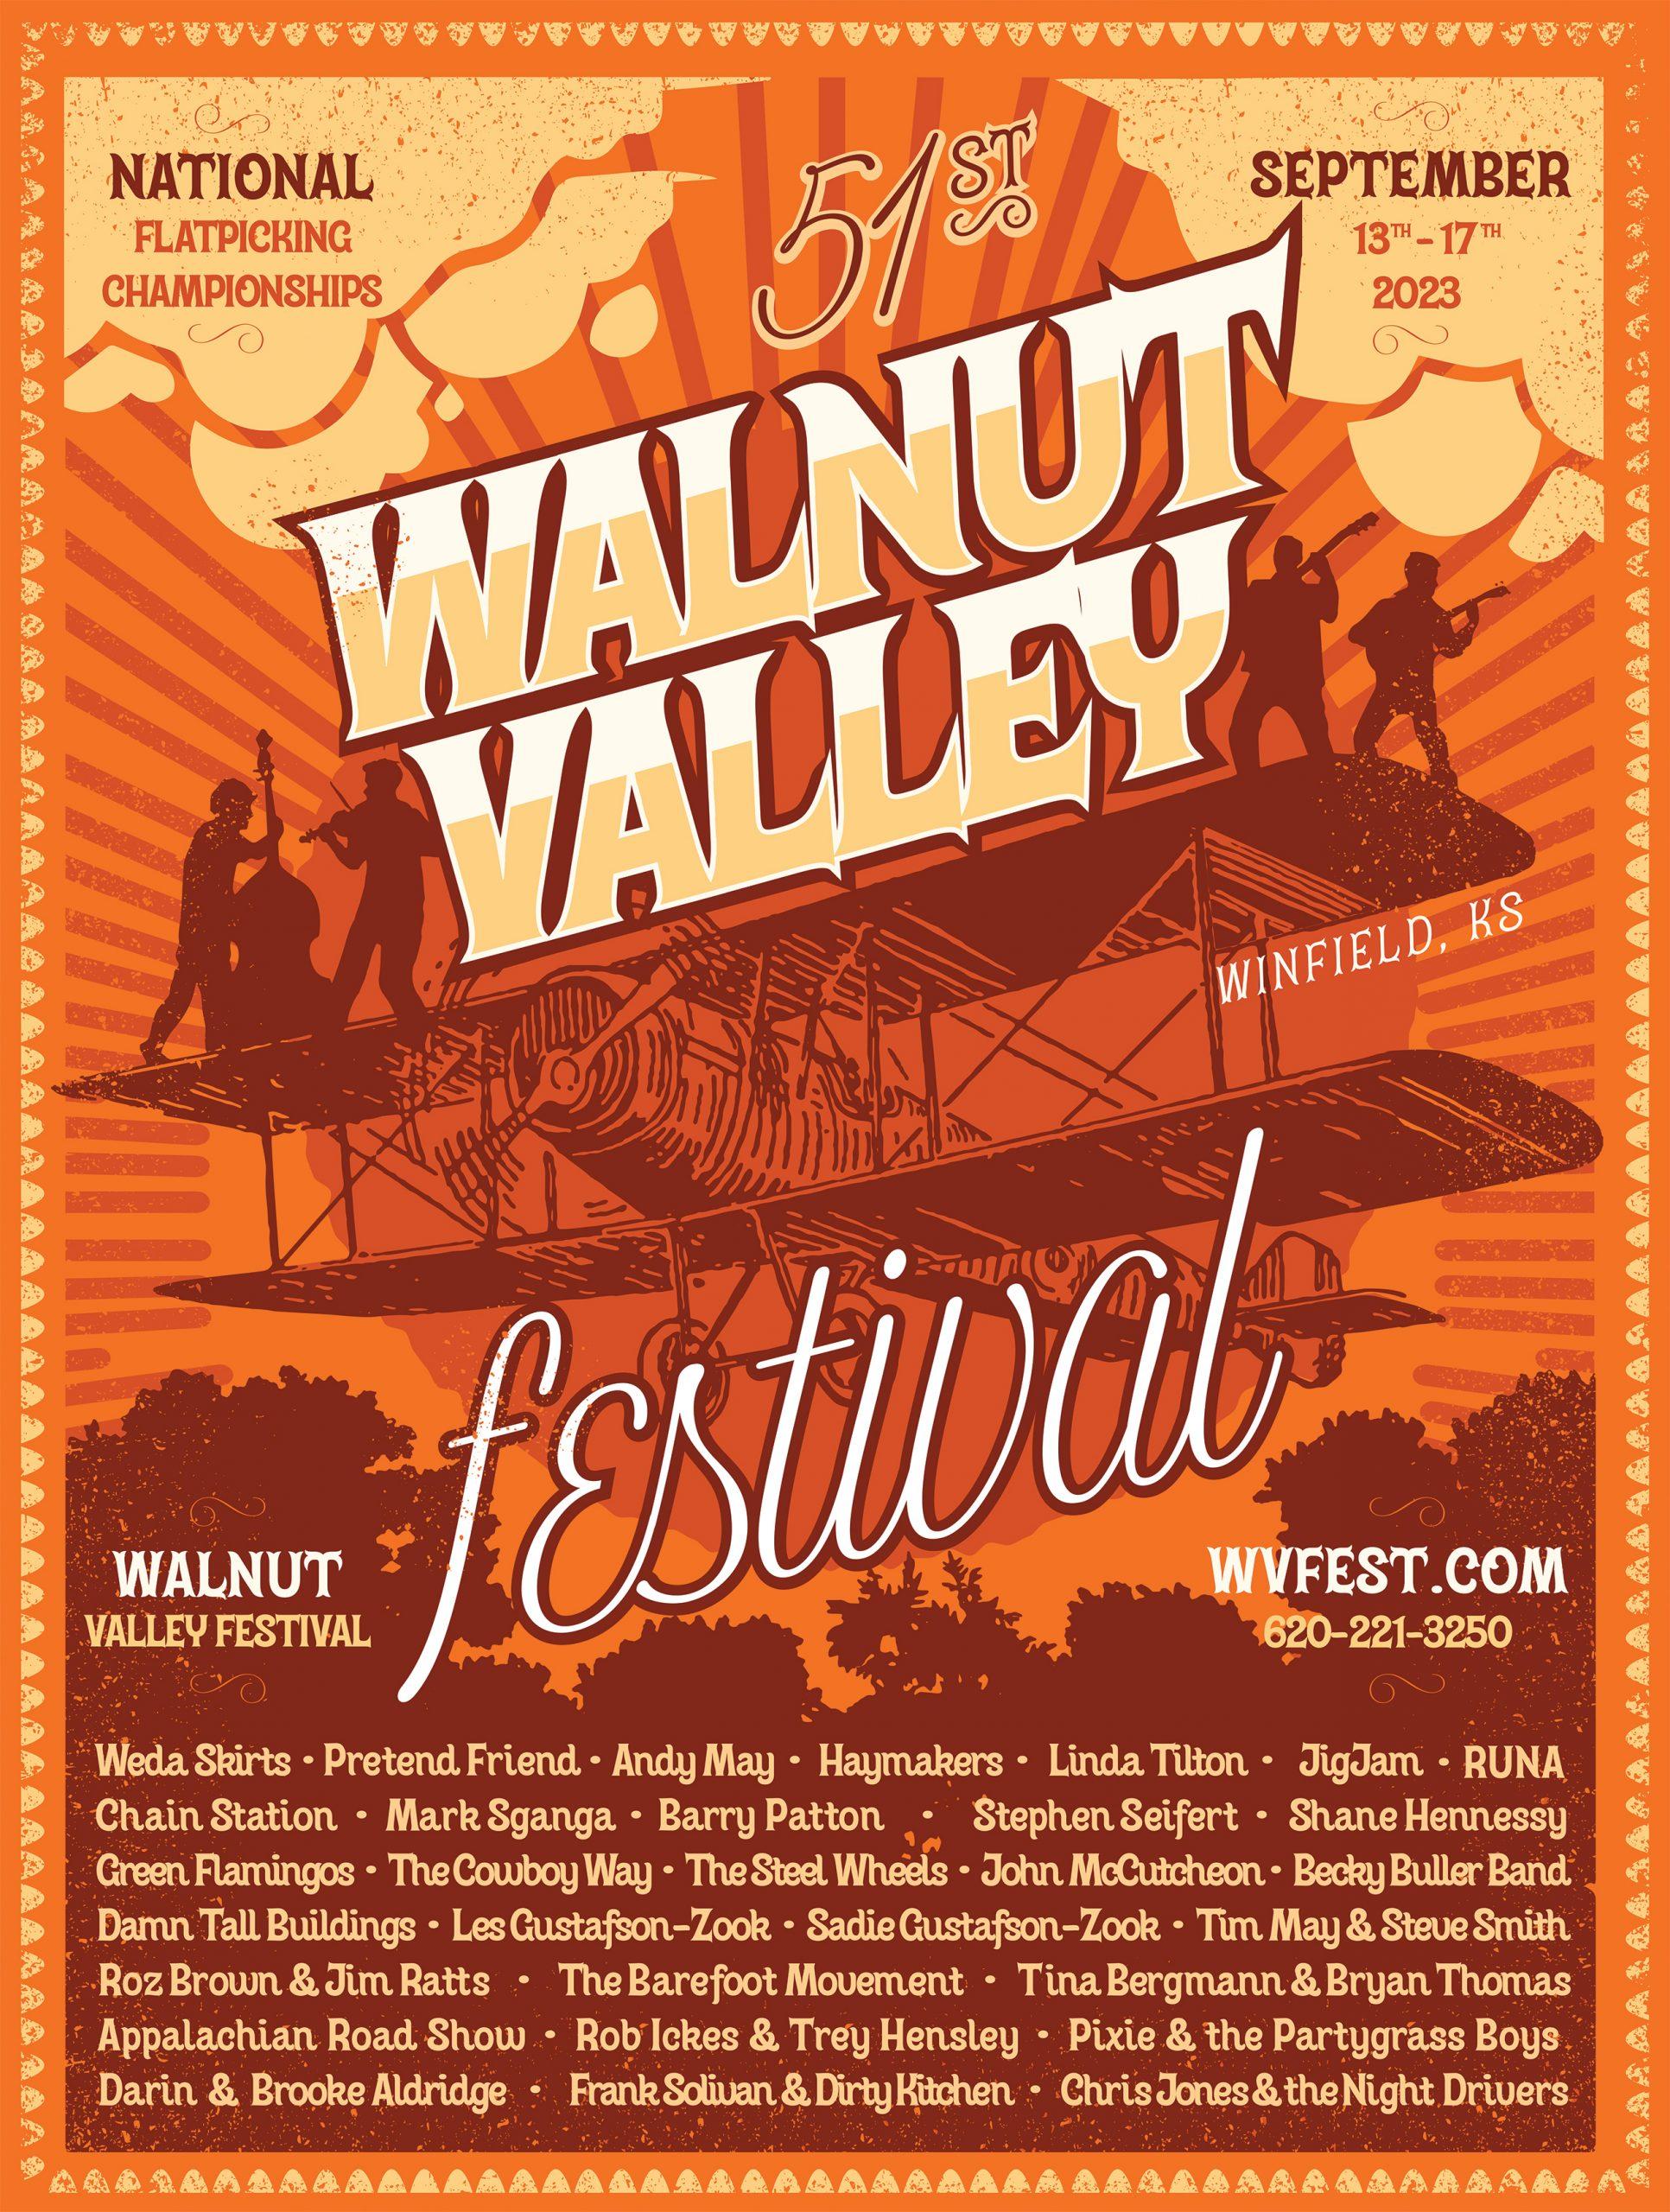 Walnut Valley Festival Program Ad Walnut Valley Festival